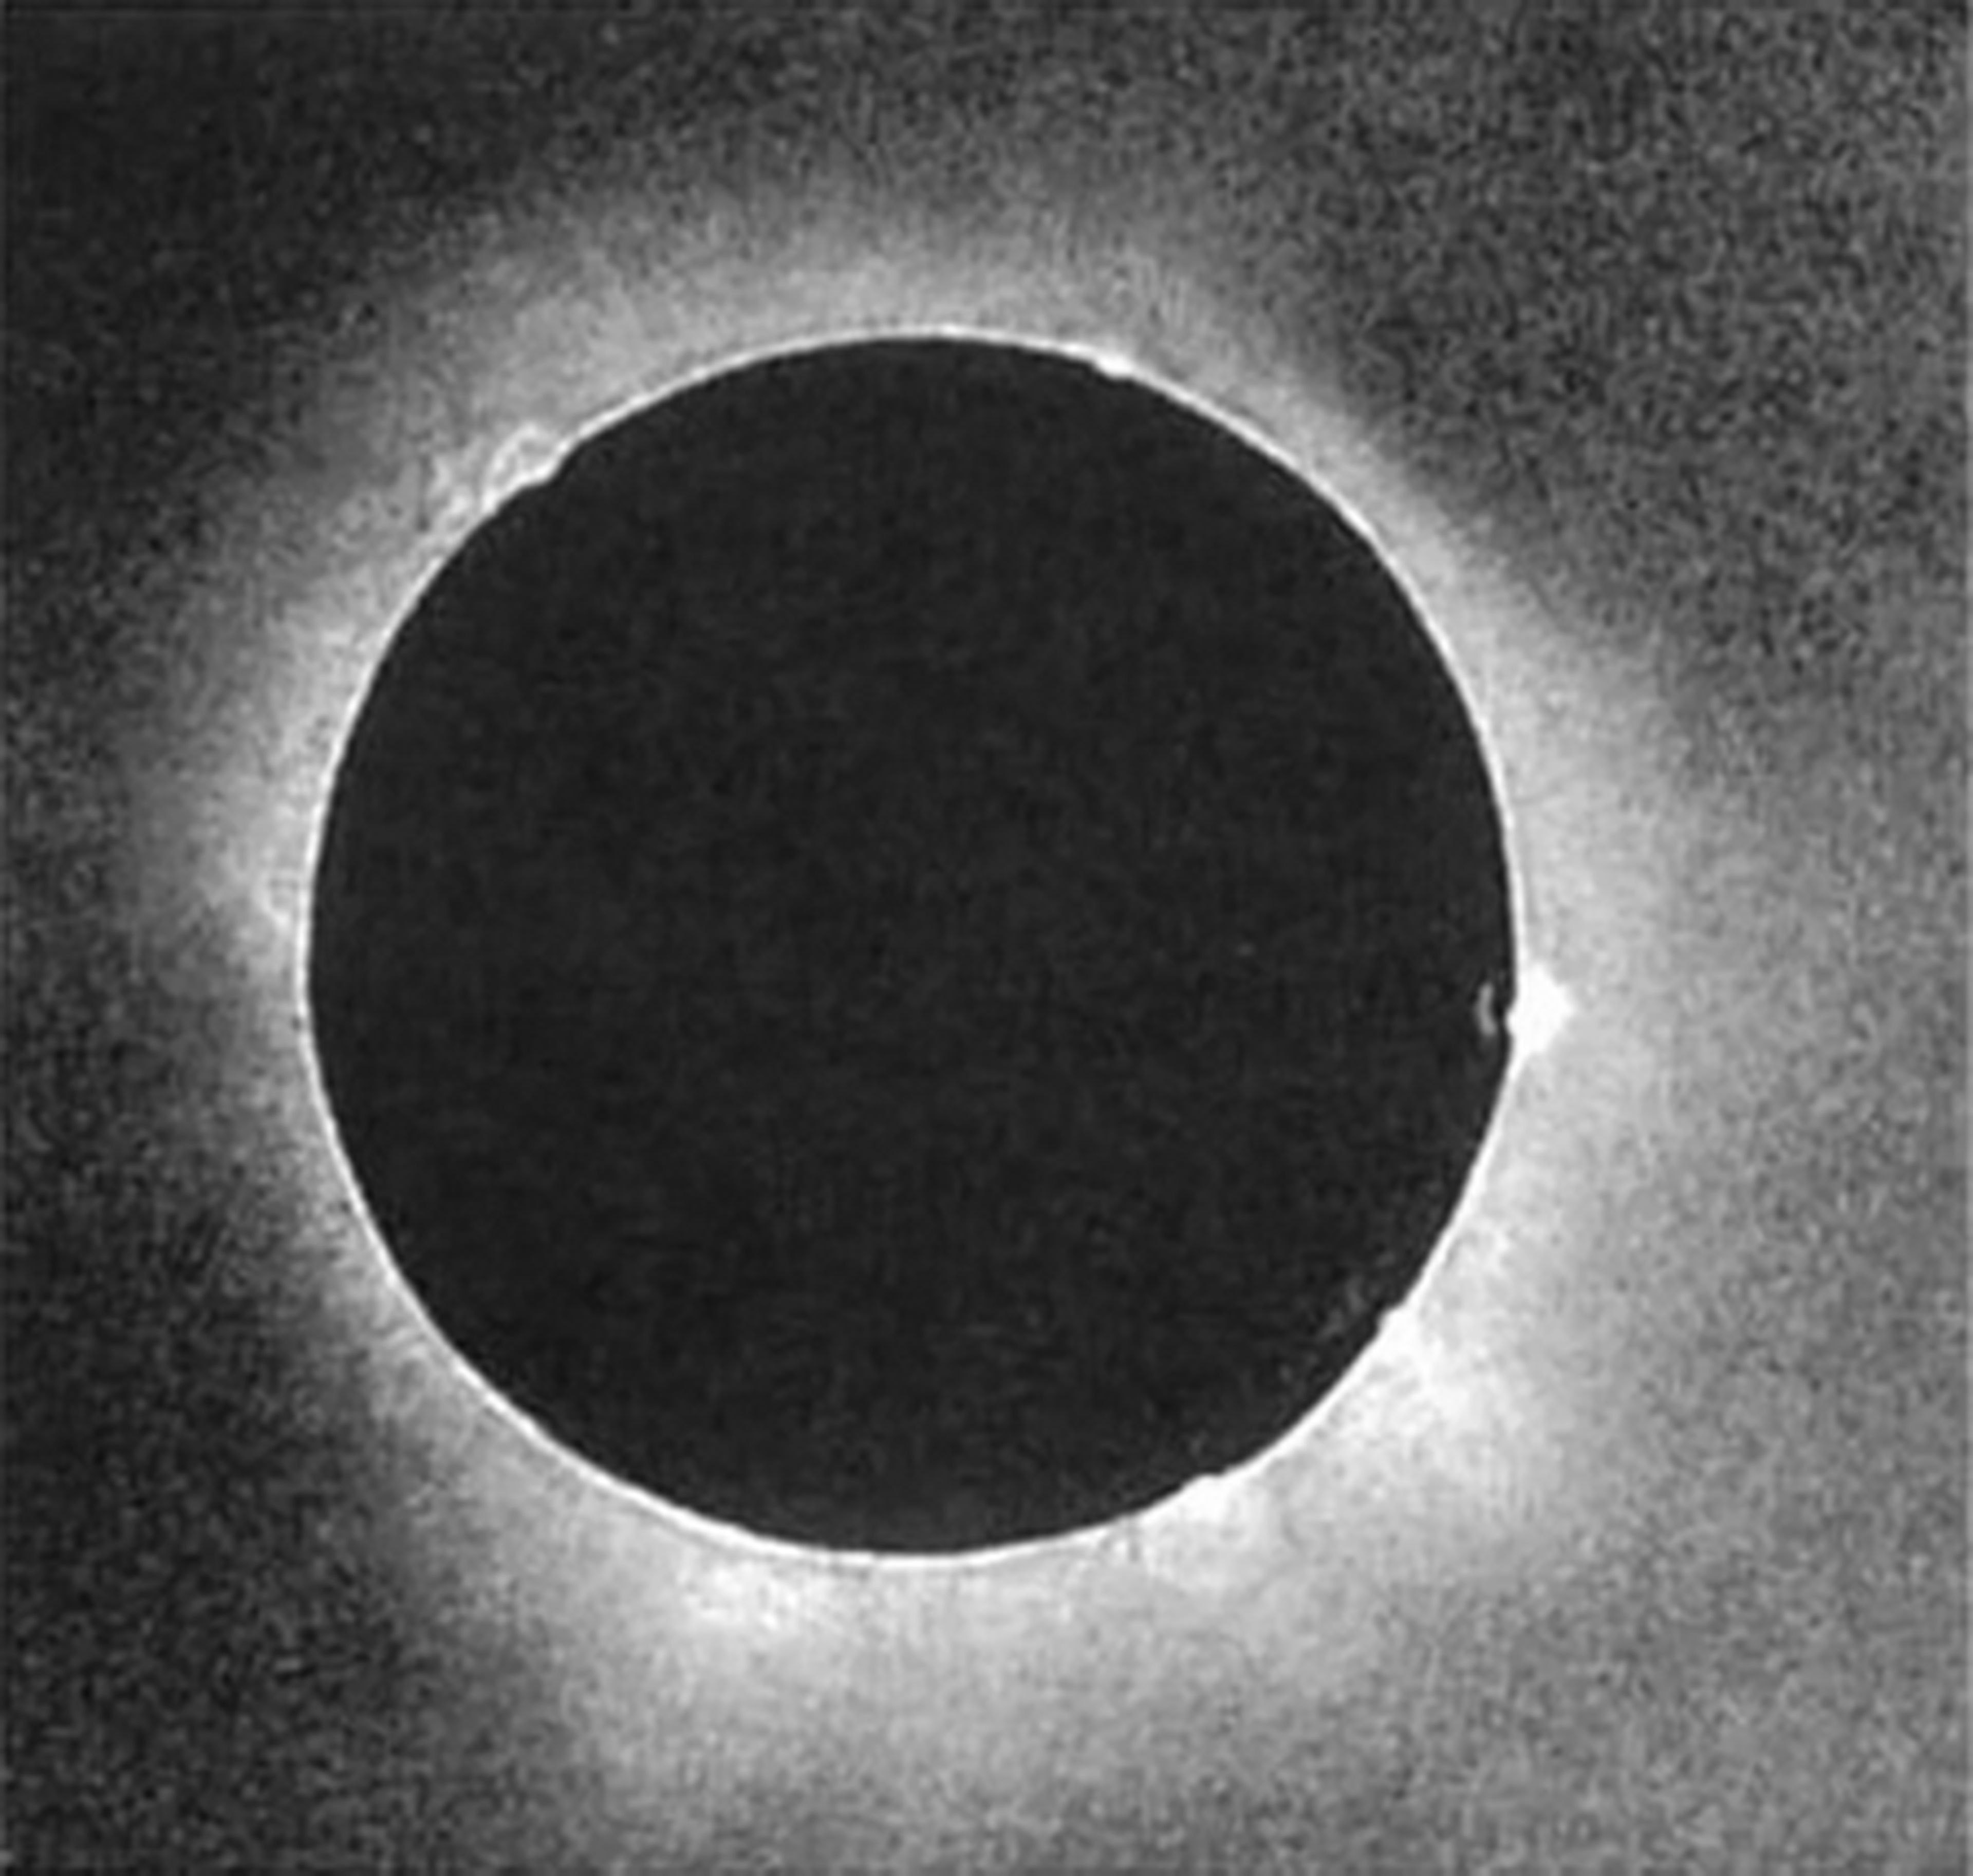 Esta es la primera foto de un eclipse de sol, tomada en 1851